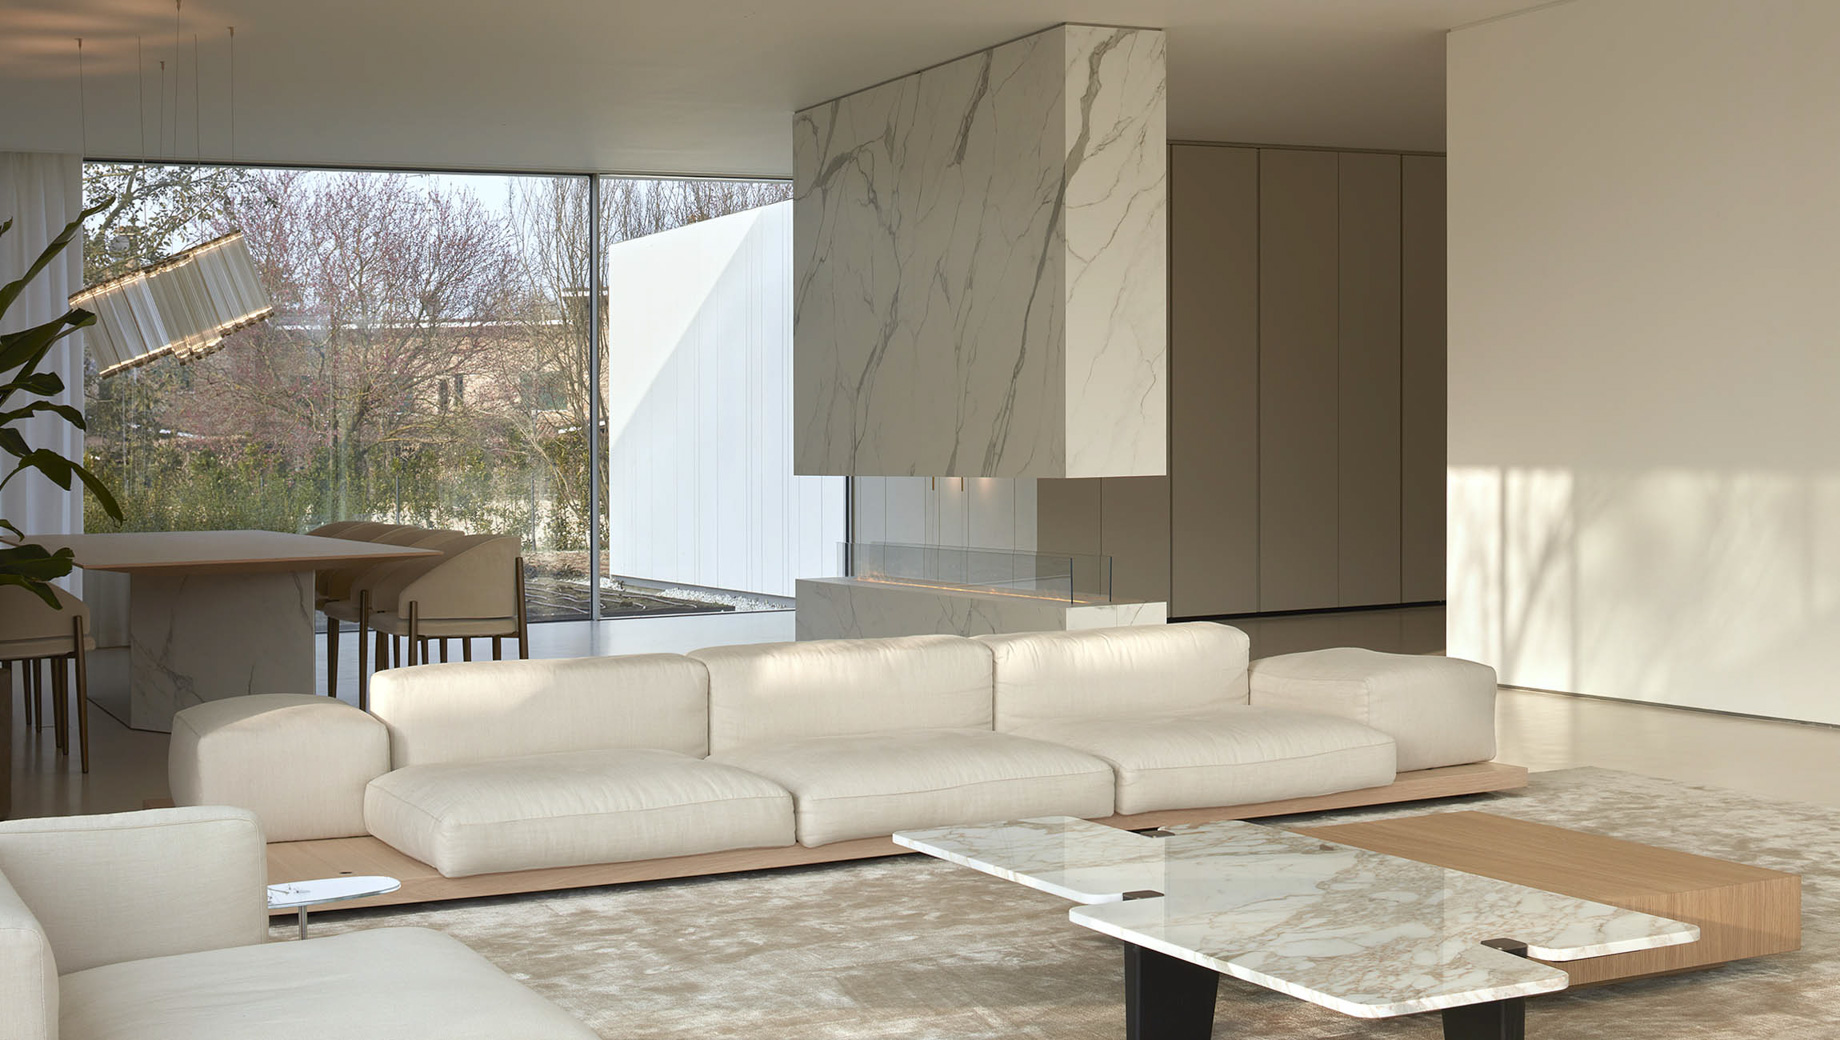 Villa Orizzonte Modern Contemporary Residence – Ferrara, Italy – 9